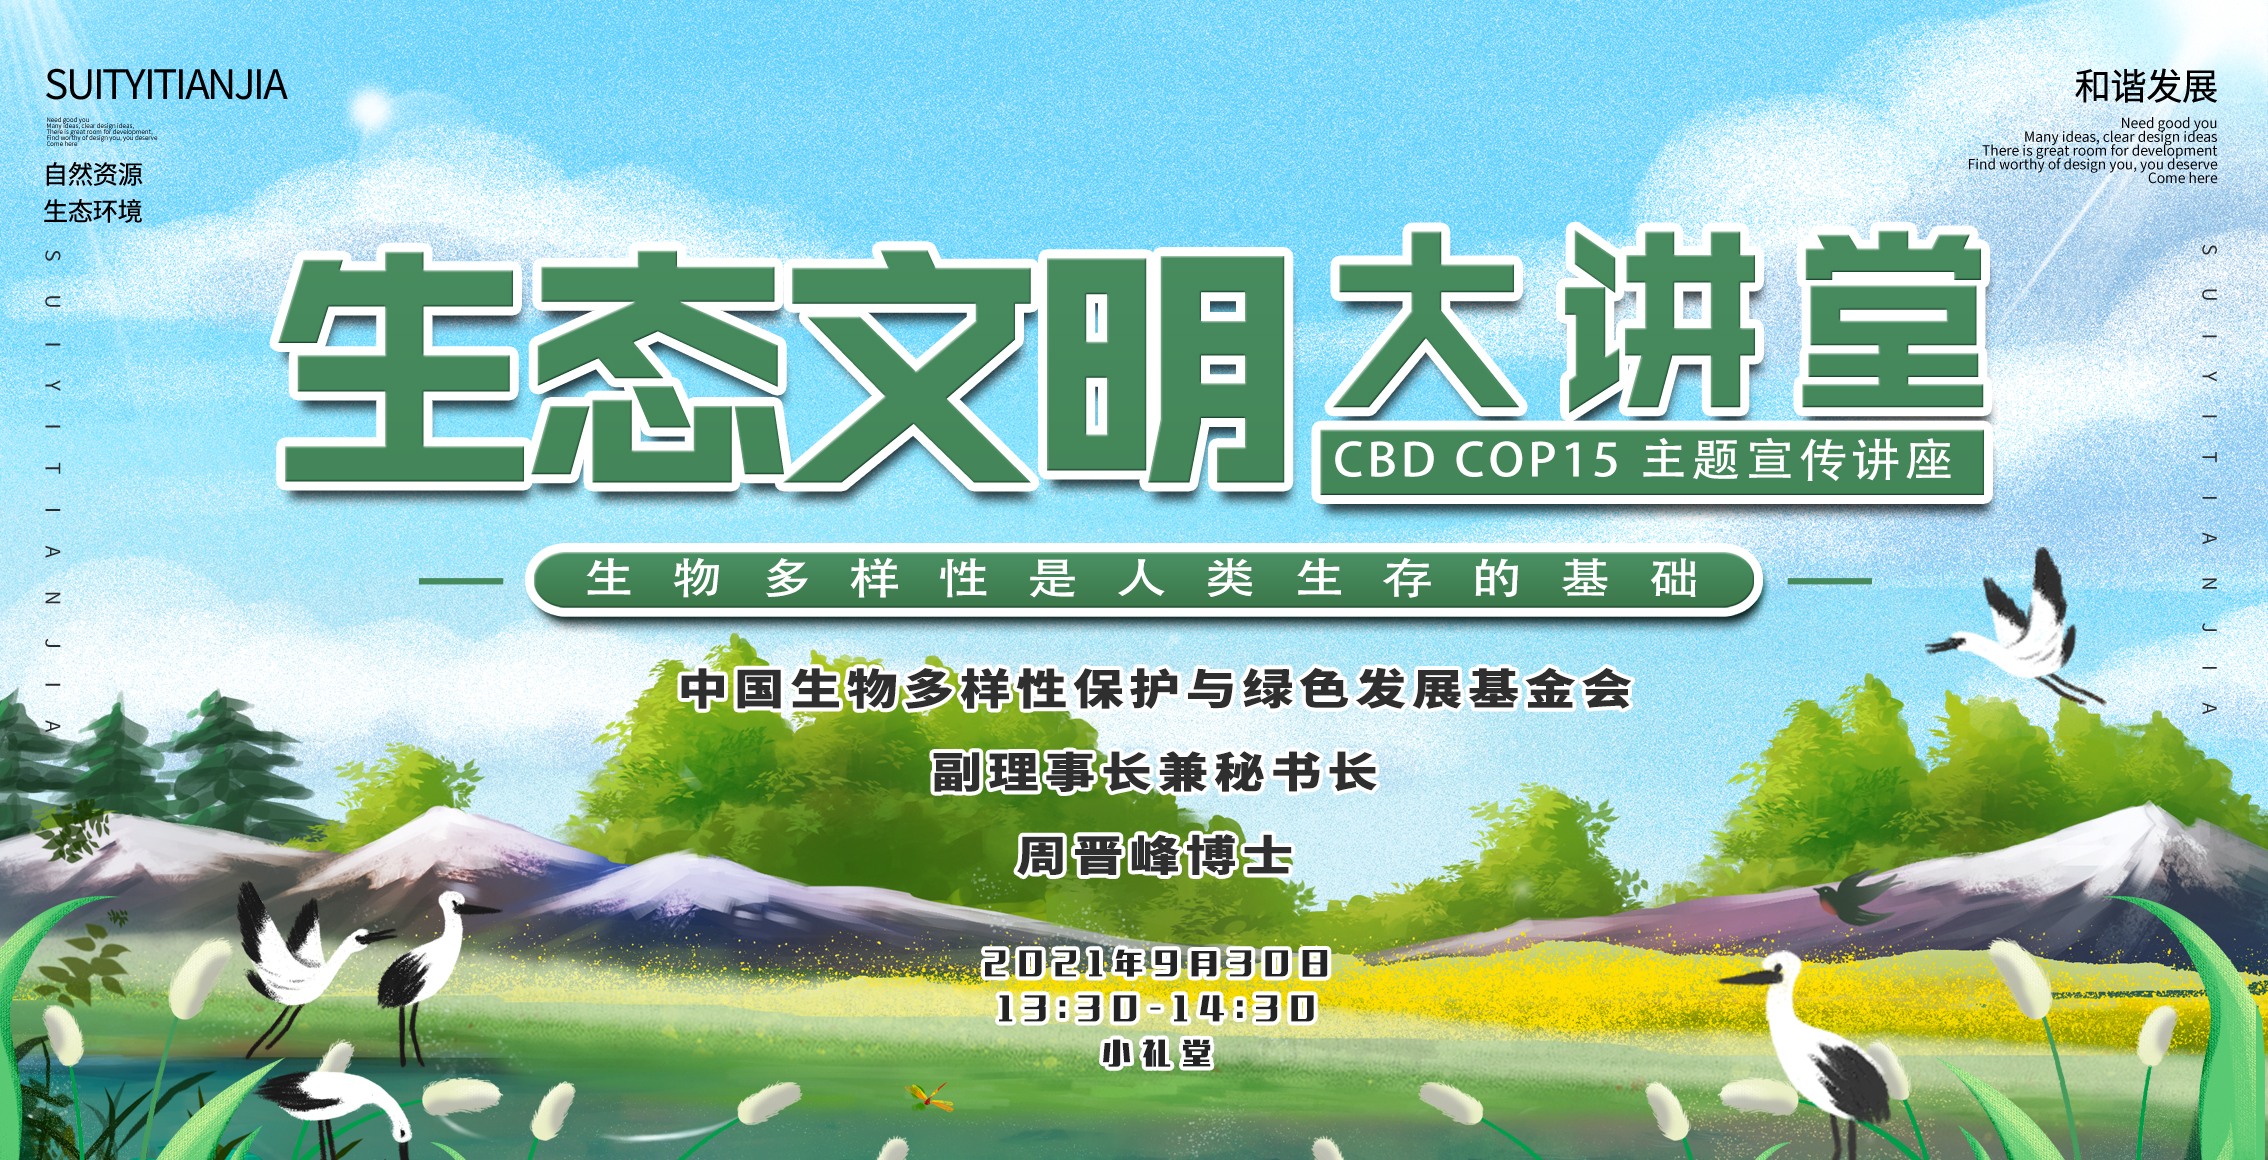 绿会cbd cop15主题宣传系列活动走进北京第57中学